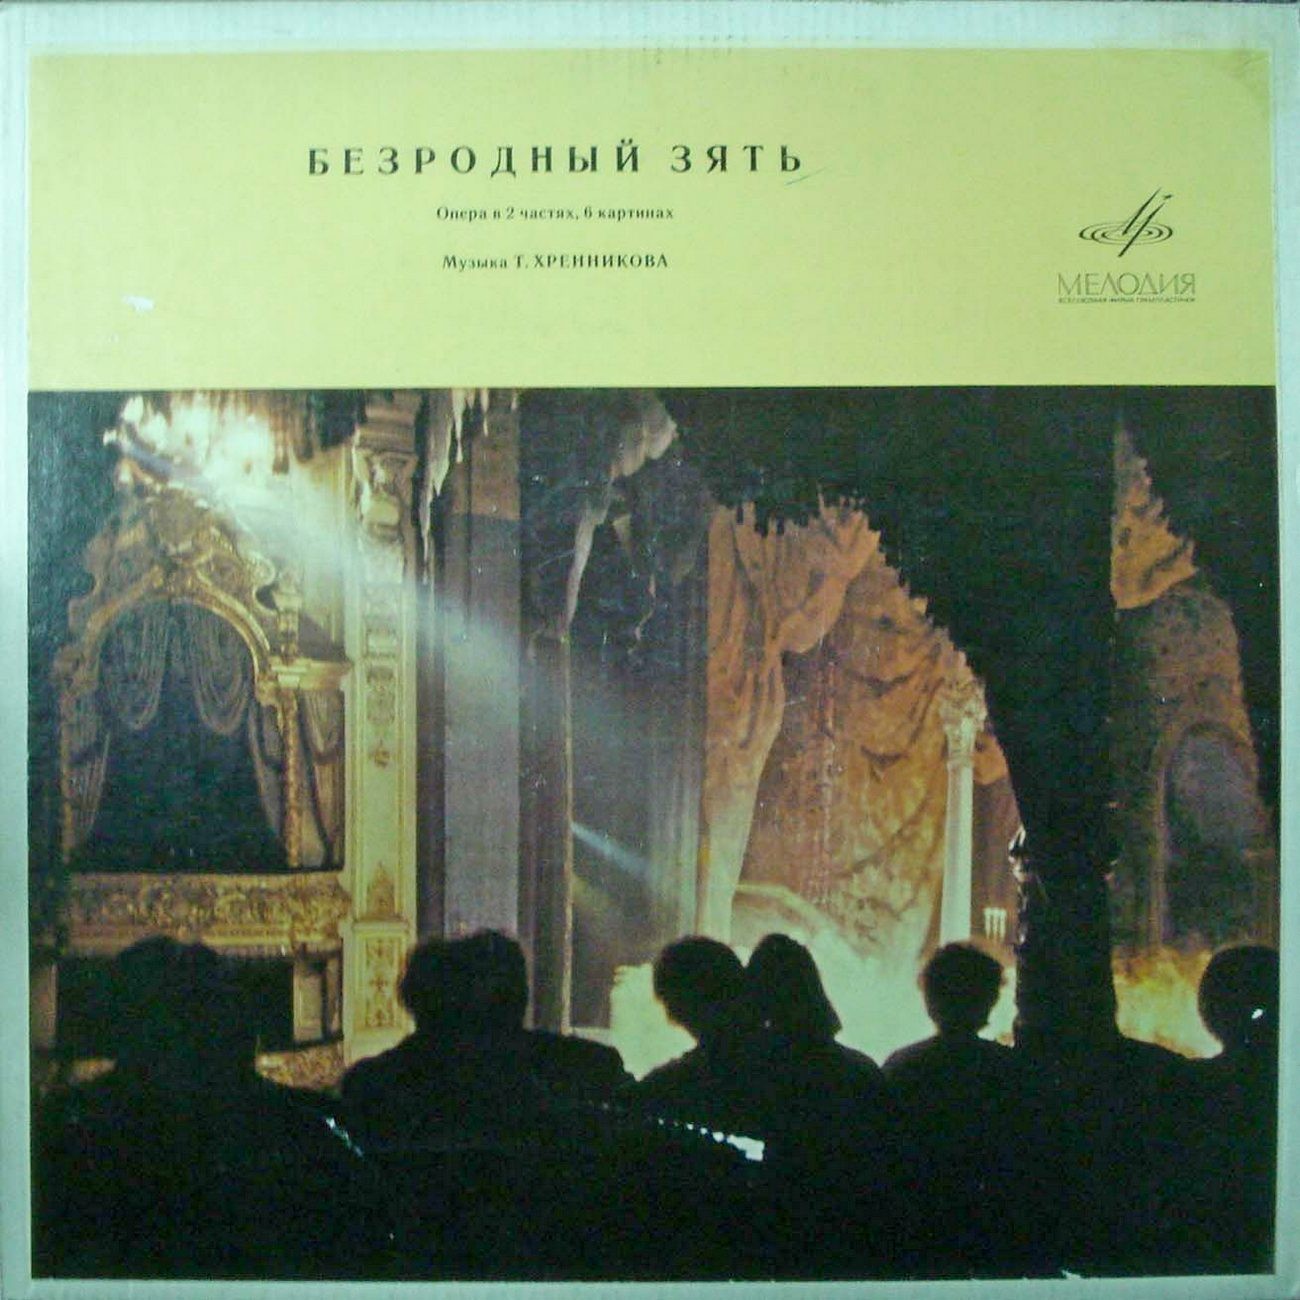 Т. ХРЕННИКОВ (1913–2007): «Безродный зять», опера в 2 ч., 6 картинах